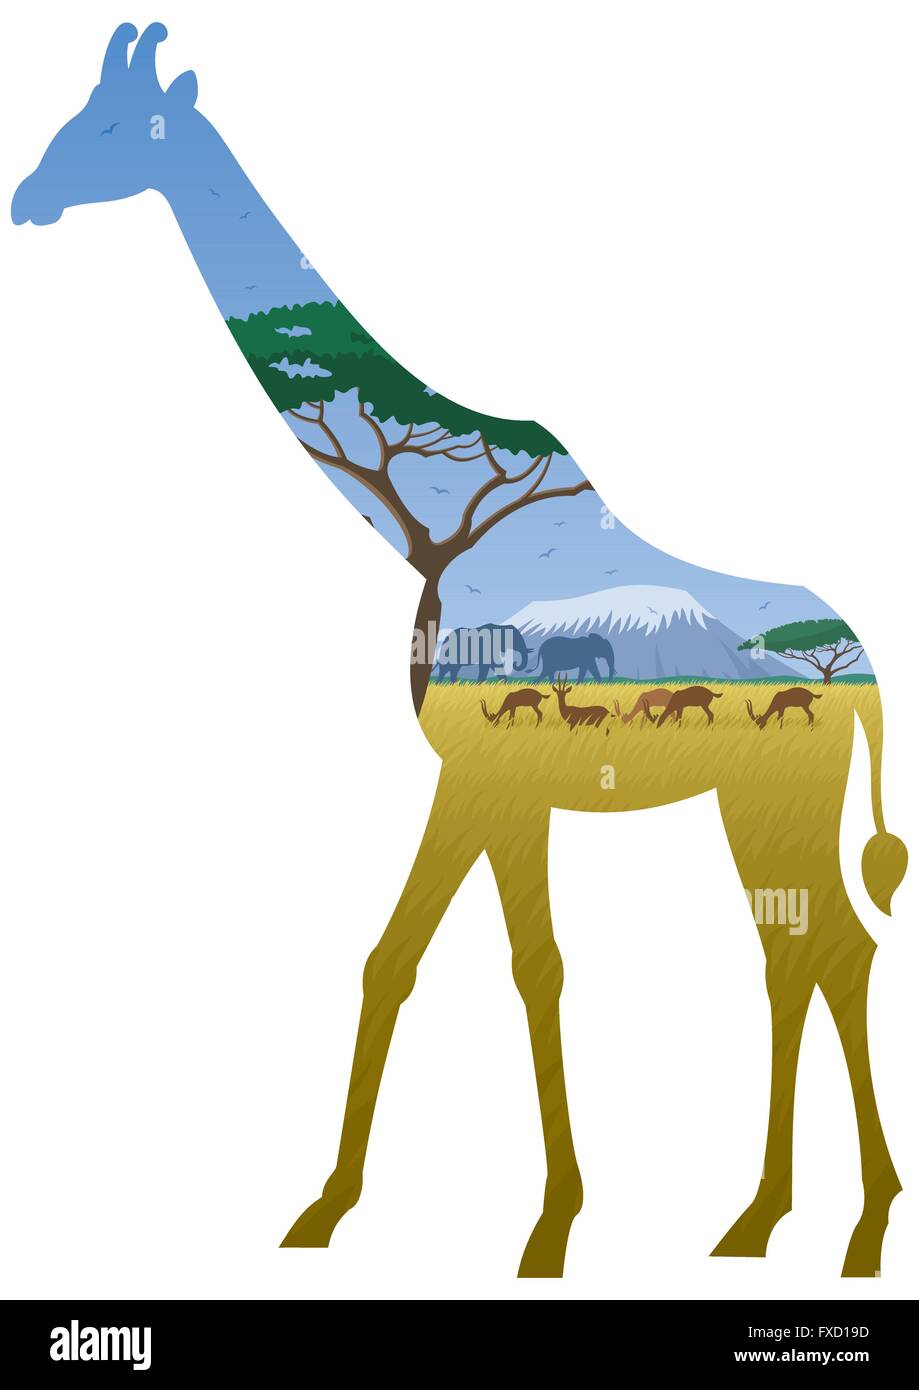 Afrikanische Landschaft in der Silhouette der Giraffe. Keine Transparenz verwendet. Einfache (lineare) Farbverläufe verwendet. Stock Vektor